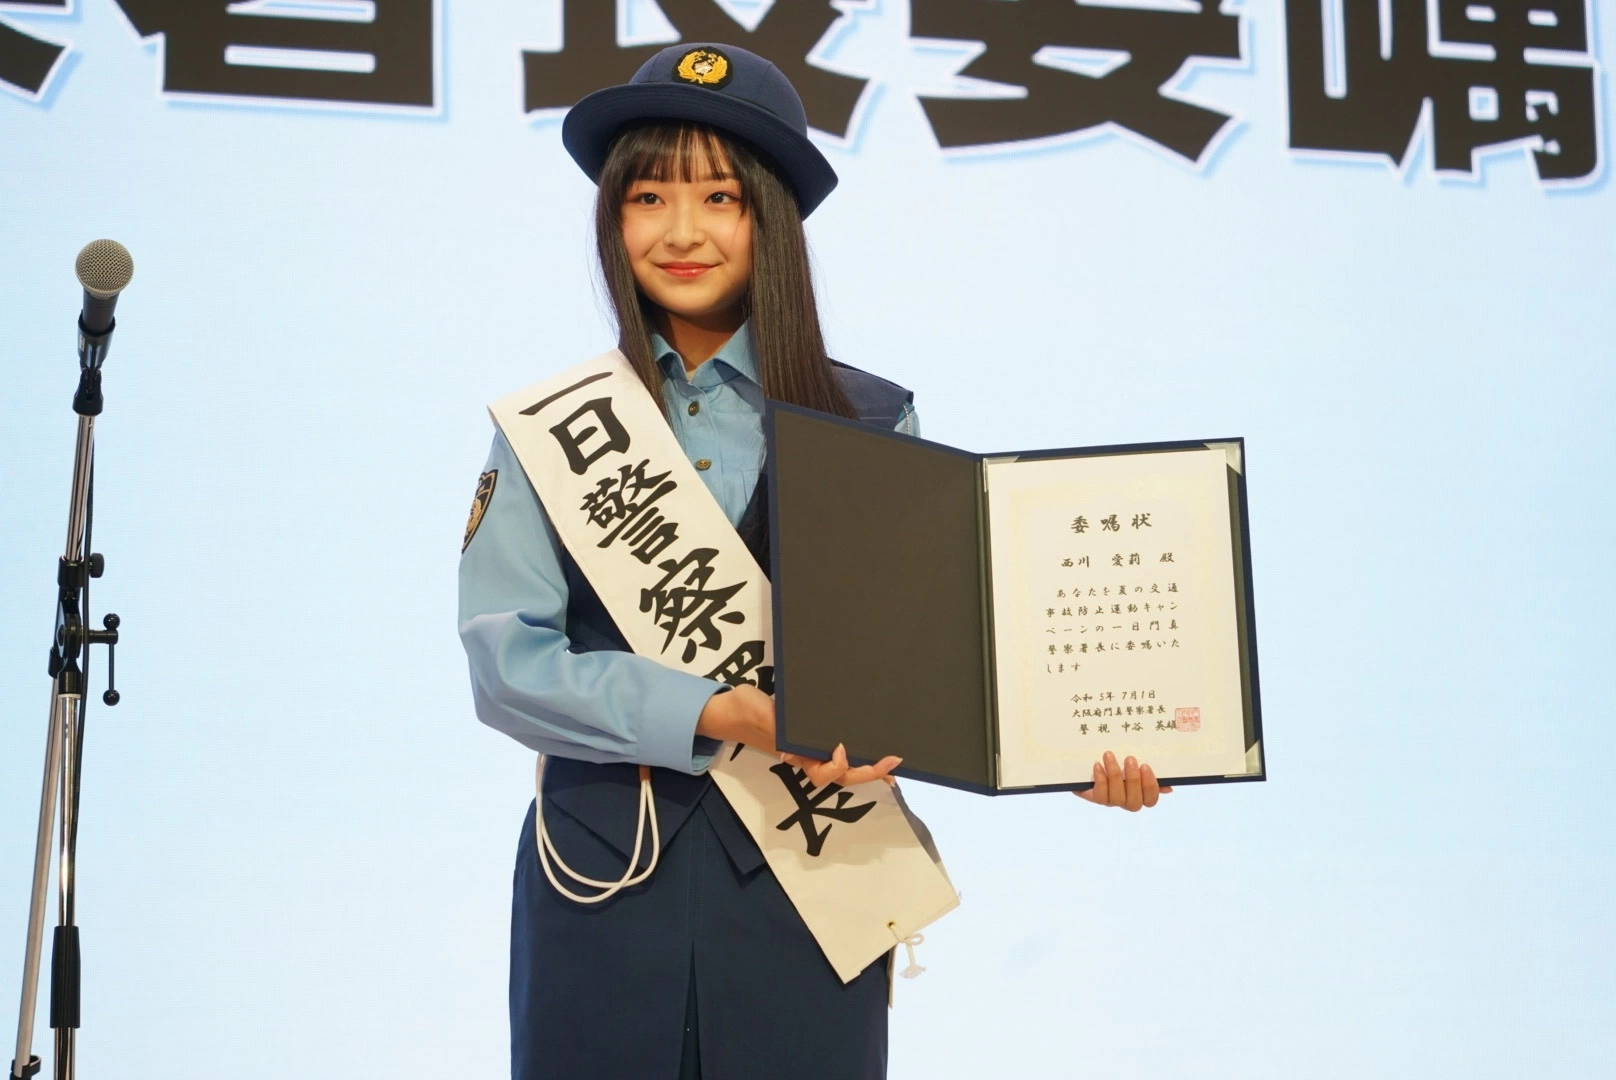 女優・西川愛莉が「1日門真警察署長」に就任